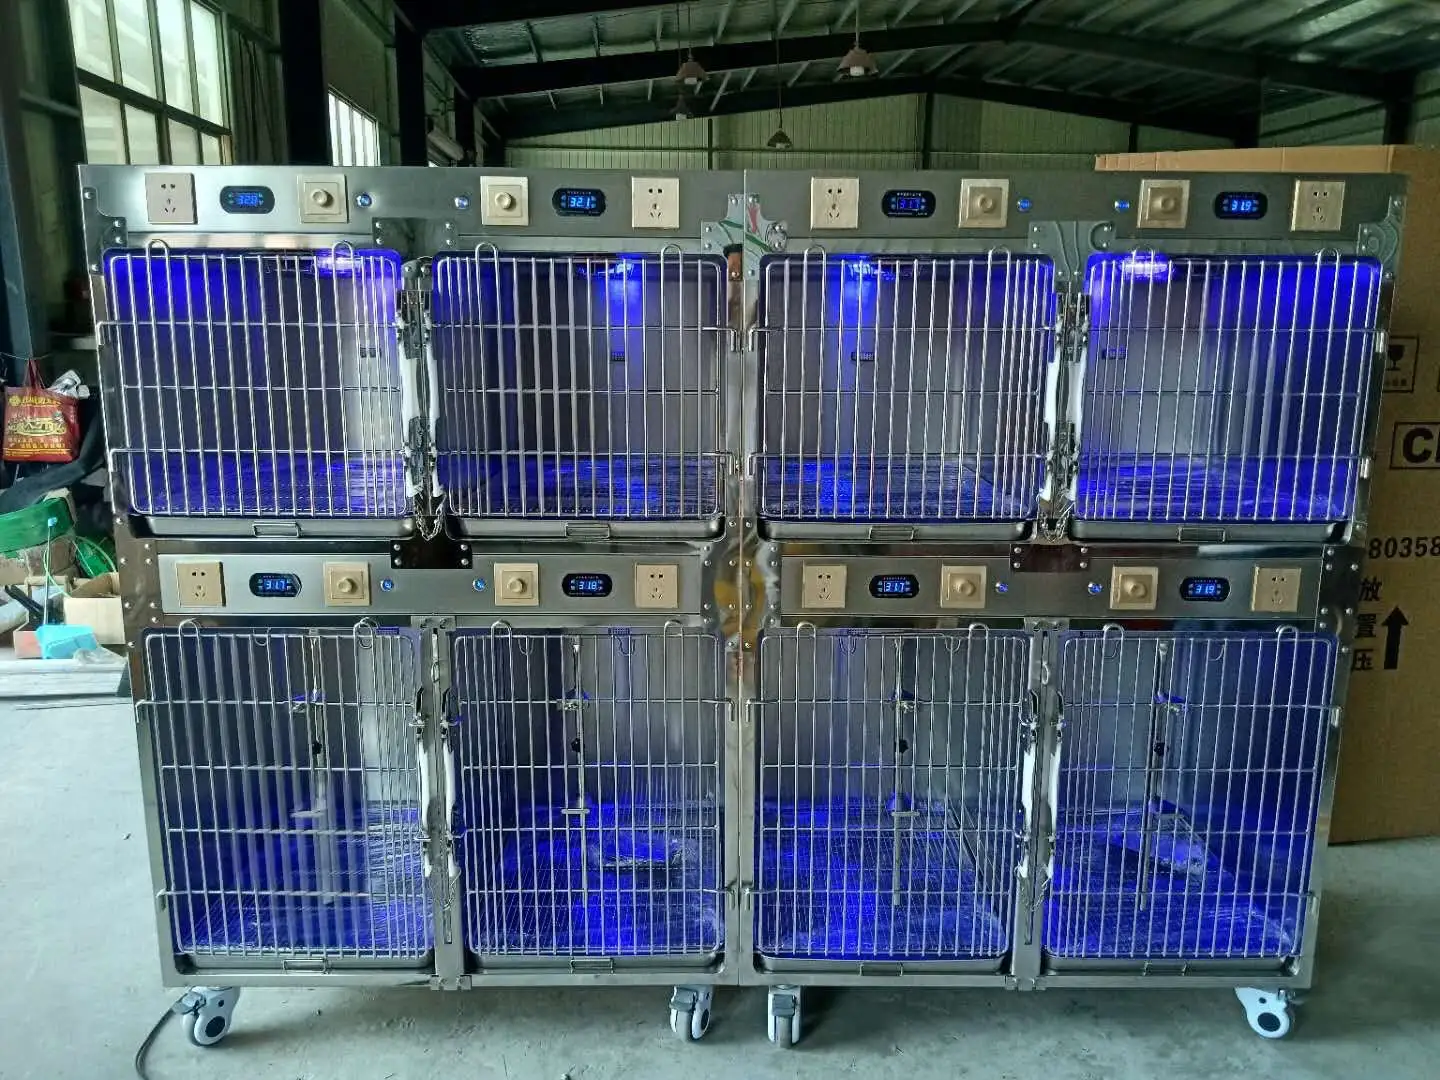 סיטונאי וטרינר בנק כלוב כלובים לחיות מחמד בית חולים גדול נירוסטה כלב כלובי